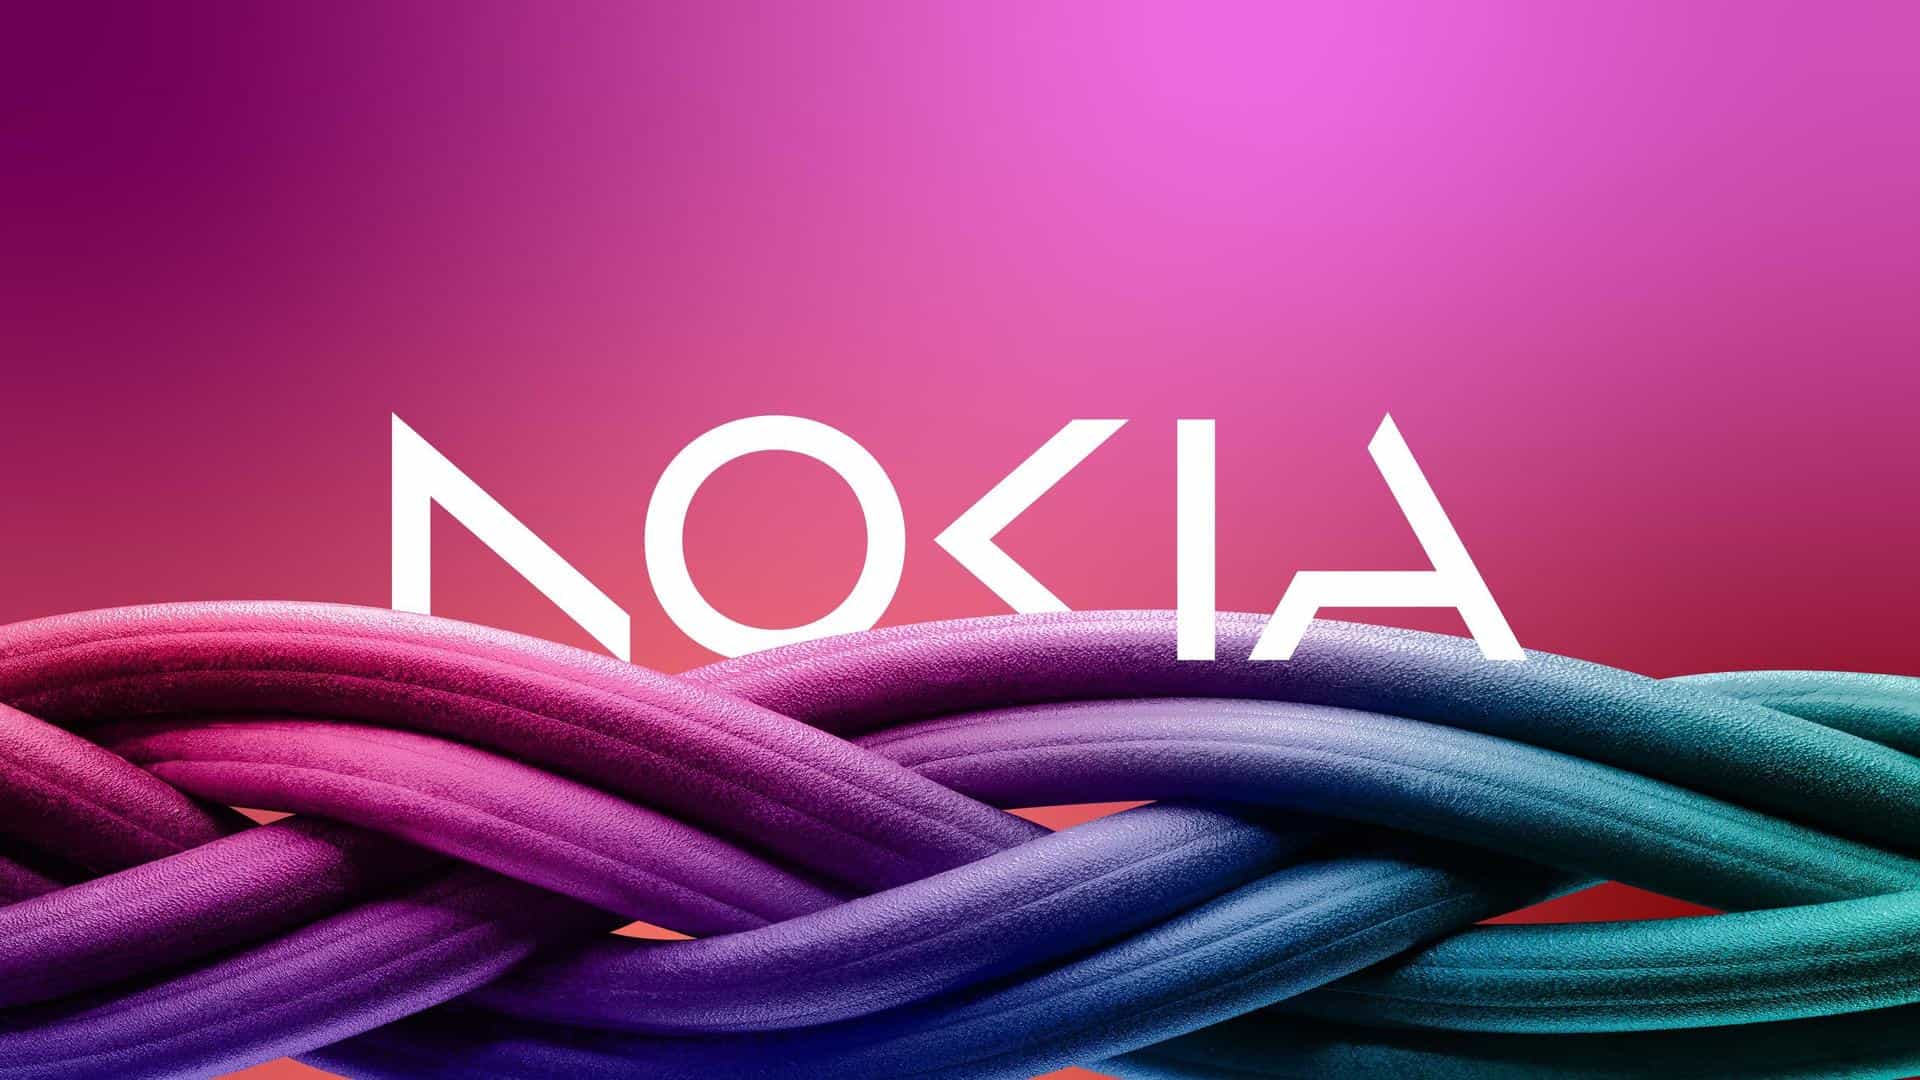 Nokia desarrolla una herramienta de inteligencia artificial para mejorar la eficiencia de la fuerza laboral industrial